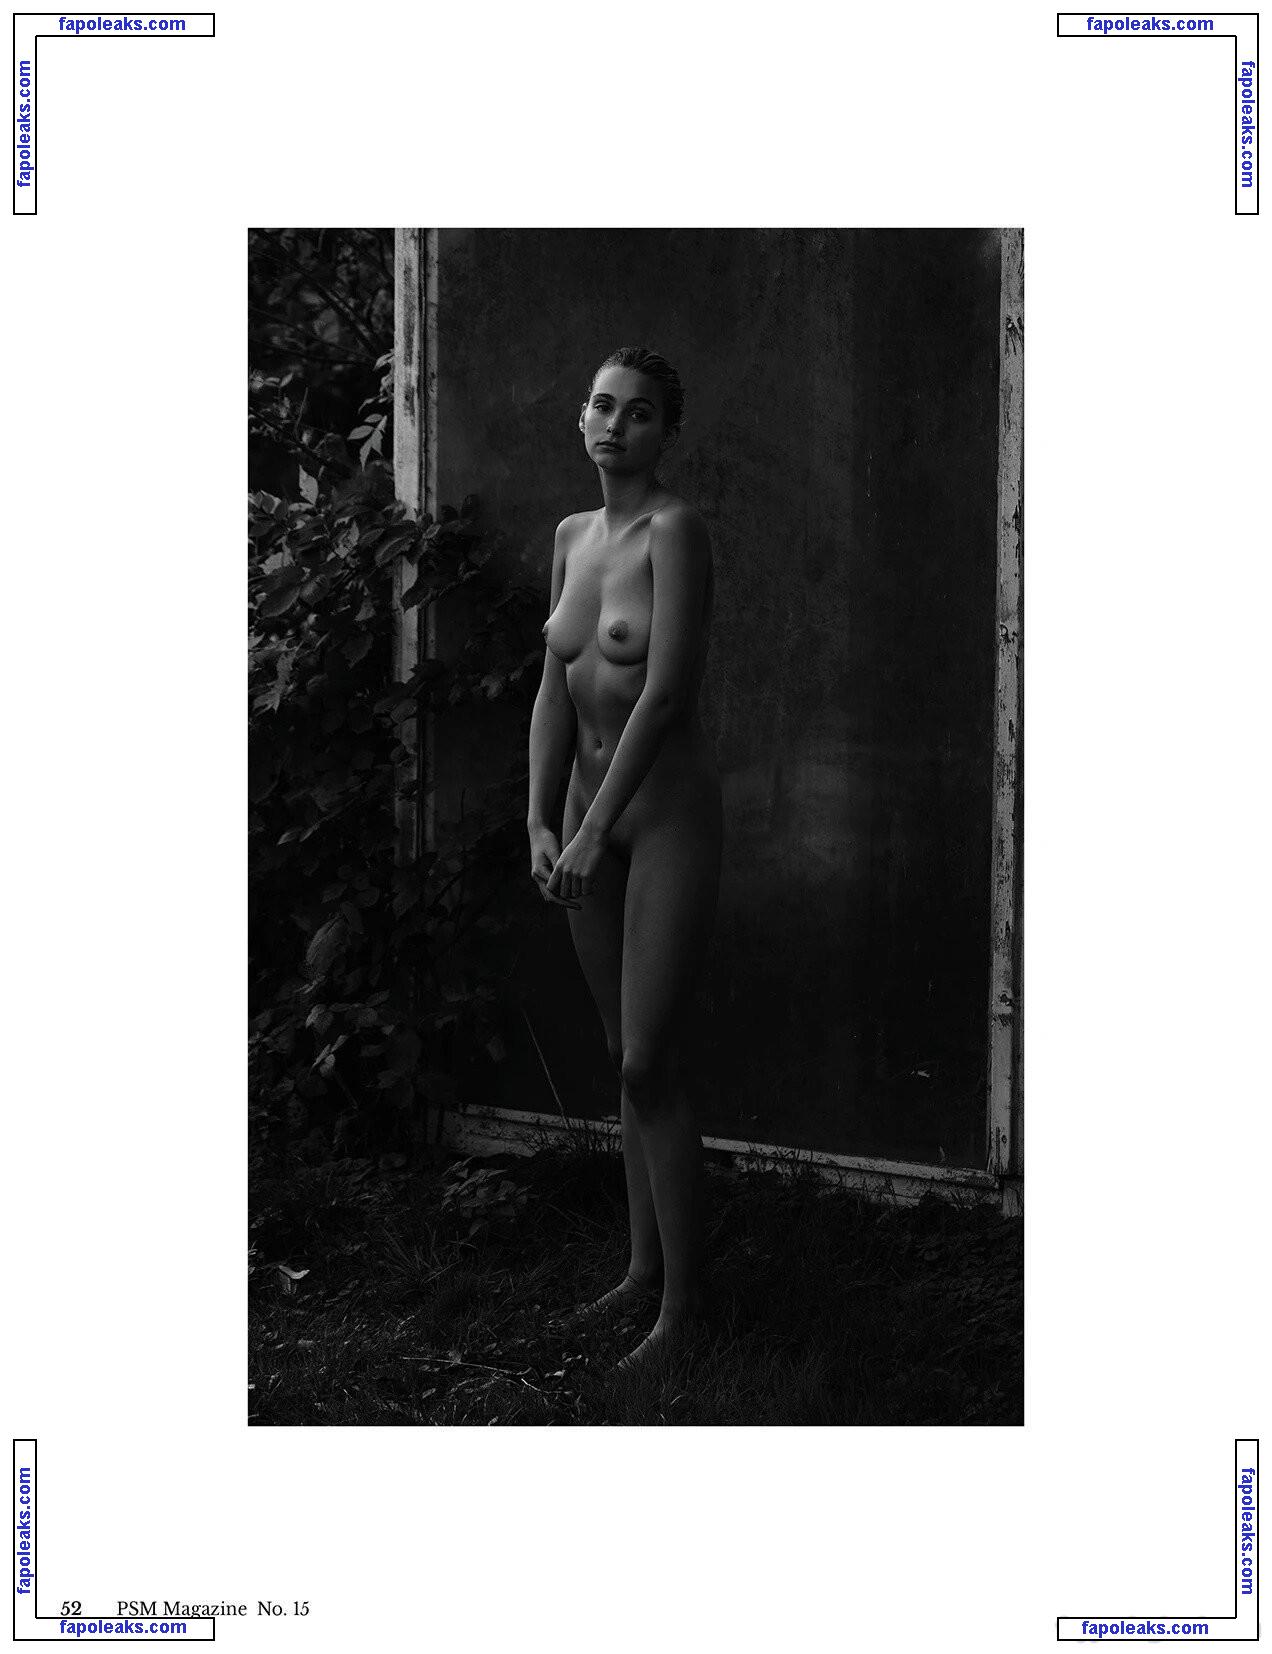 Nikki Hillier / nikki__hillier nude photo #0005 from OnlyFans